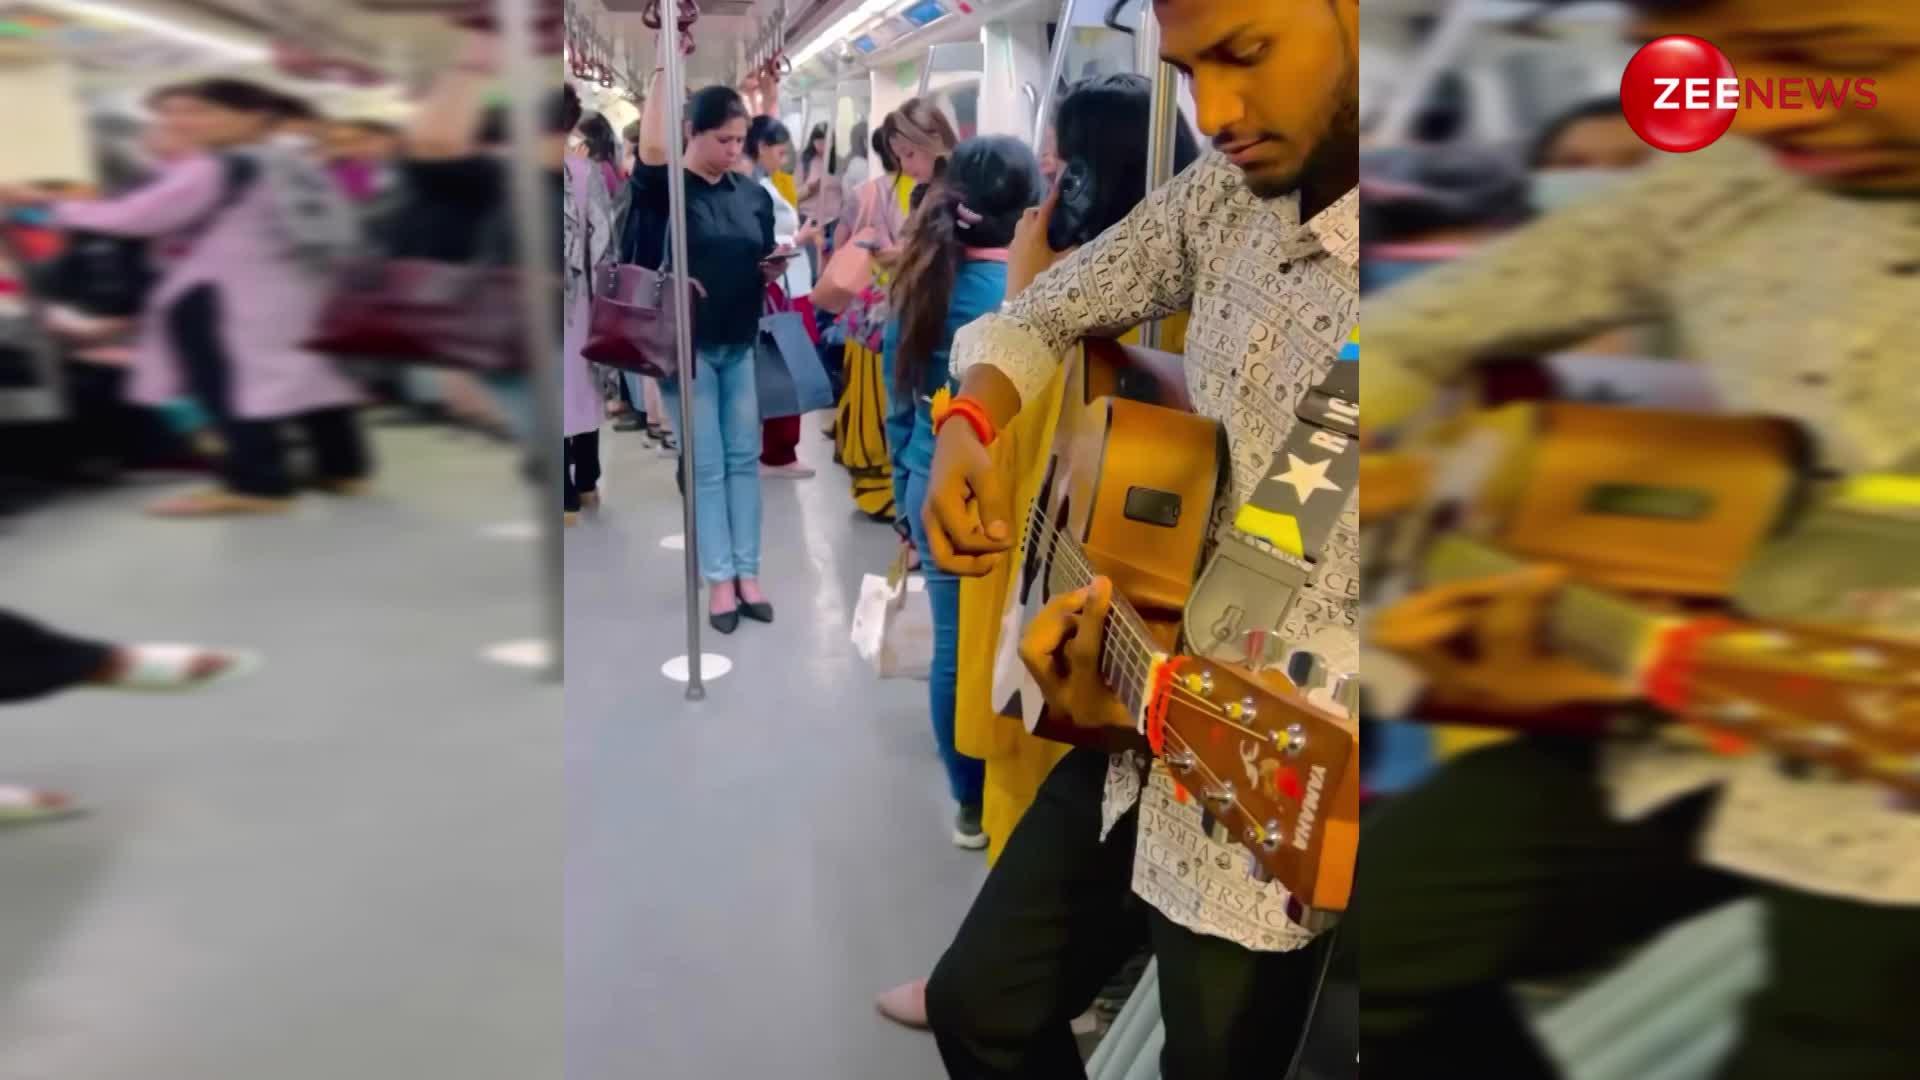 मेट्रो में खड़े होकर लड़के ने गिटार की धुन पर गा दिया 'शिव तांडव', लोगों का प्राइजलेस रिएक्शन हुआ वायरल